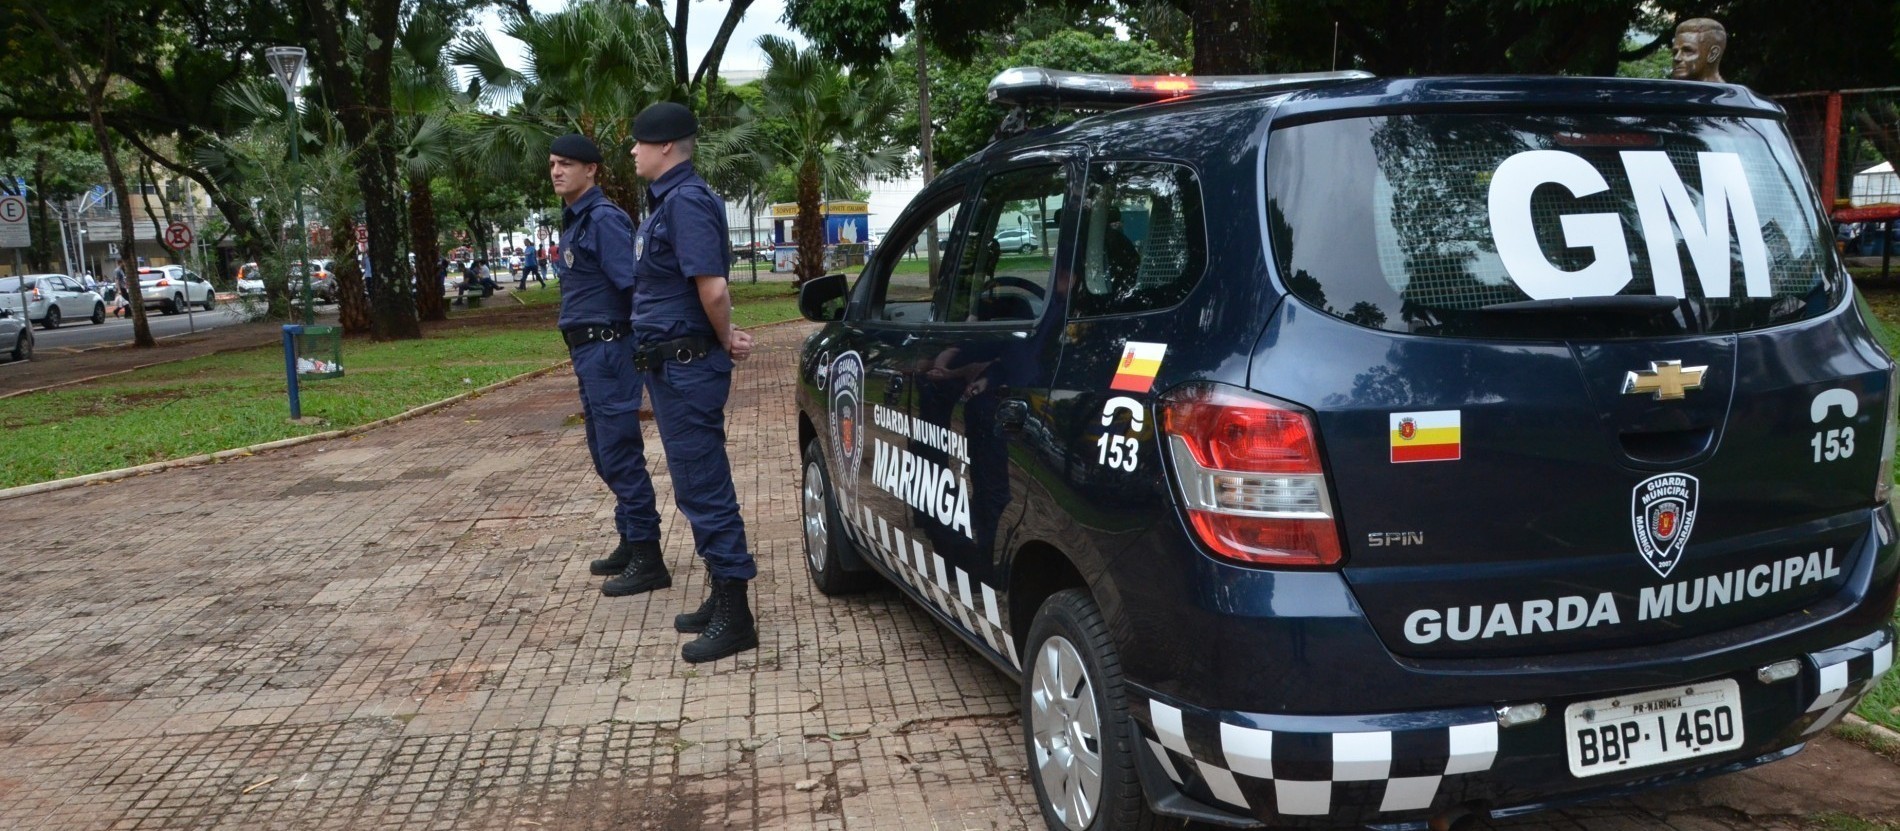 Guarda Municipal estará mais presente na Praça Raposo Tavares, diz secretário